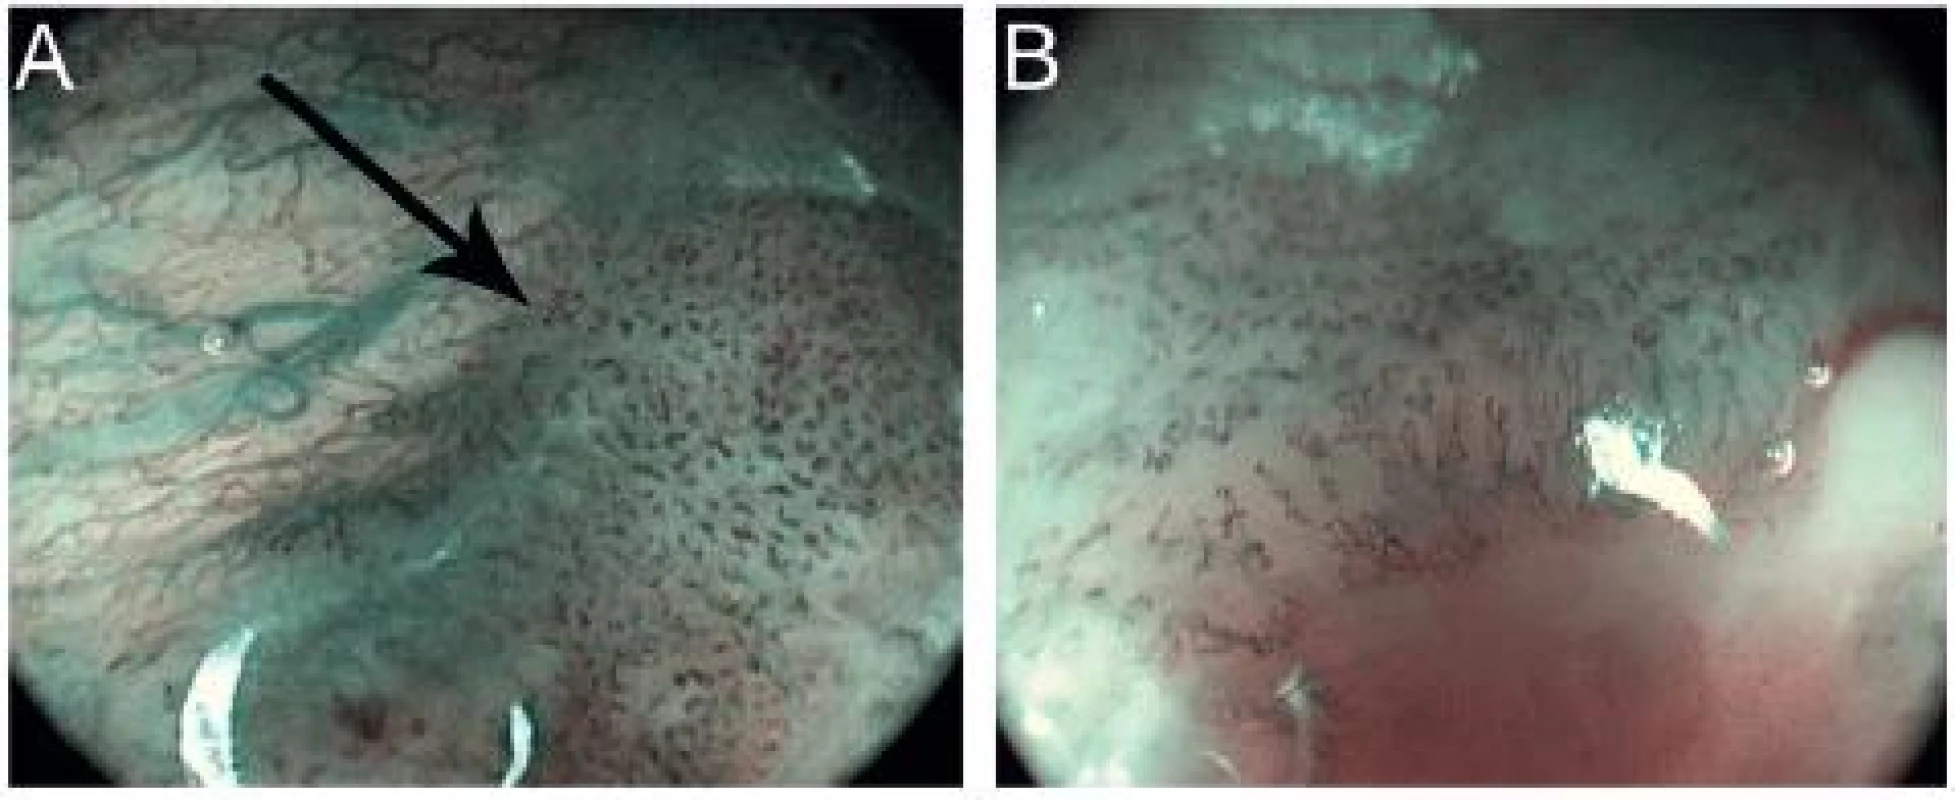 Pokročilý karcinom měkkého patra – HDTV NBI zvětšovací endoskopie. Dobře patrný přechod normální vaskularizace v nádorovou v okraji tumoru (šipka) (A) a rozpad cévní mikroarchitektury v centru tumoru (B).